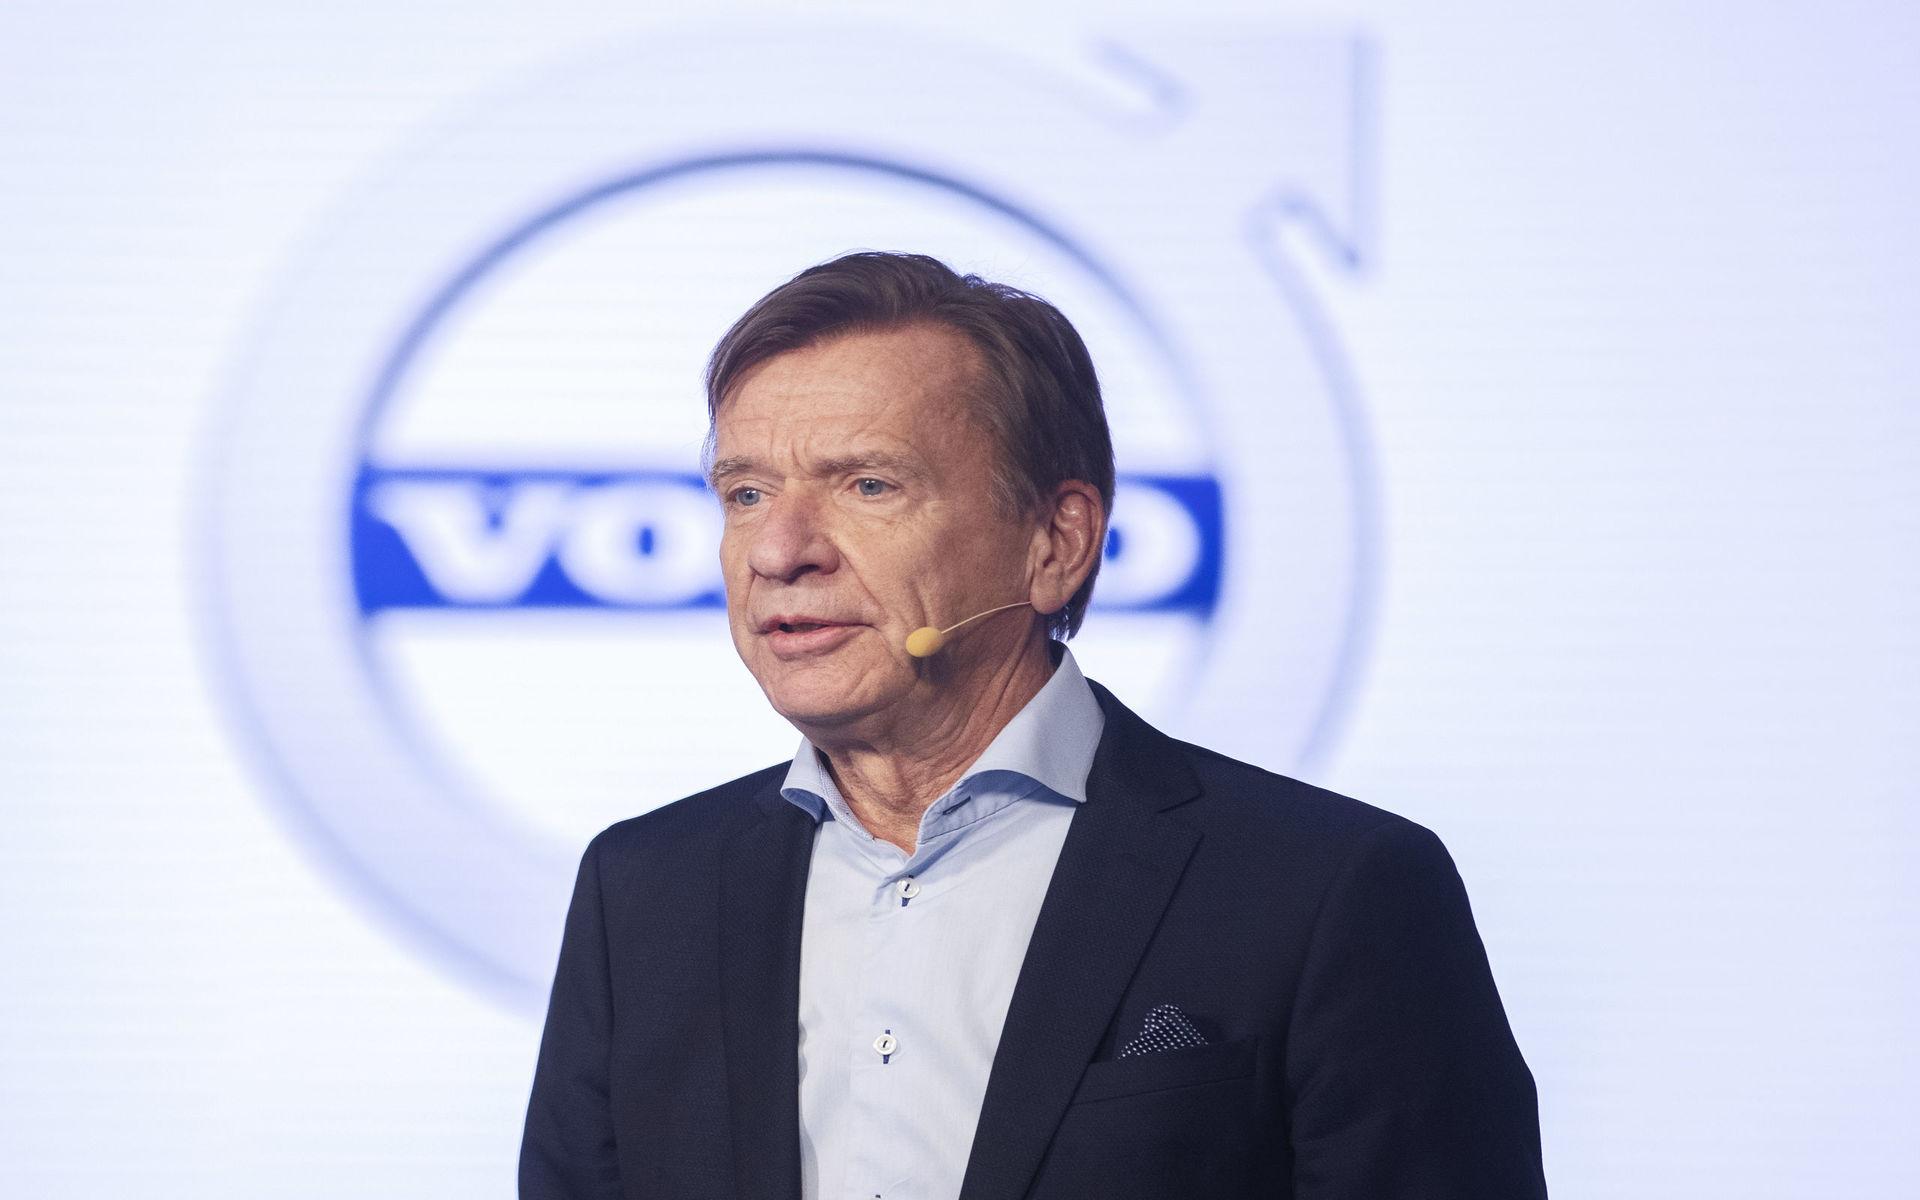 &quot;Coronakrisen kräver solidaritet och handlingar&quot;, skriver Volvo Cars vd Håkan Samuelson på Twitter.